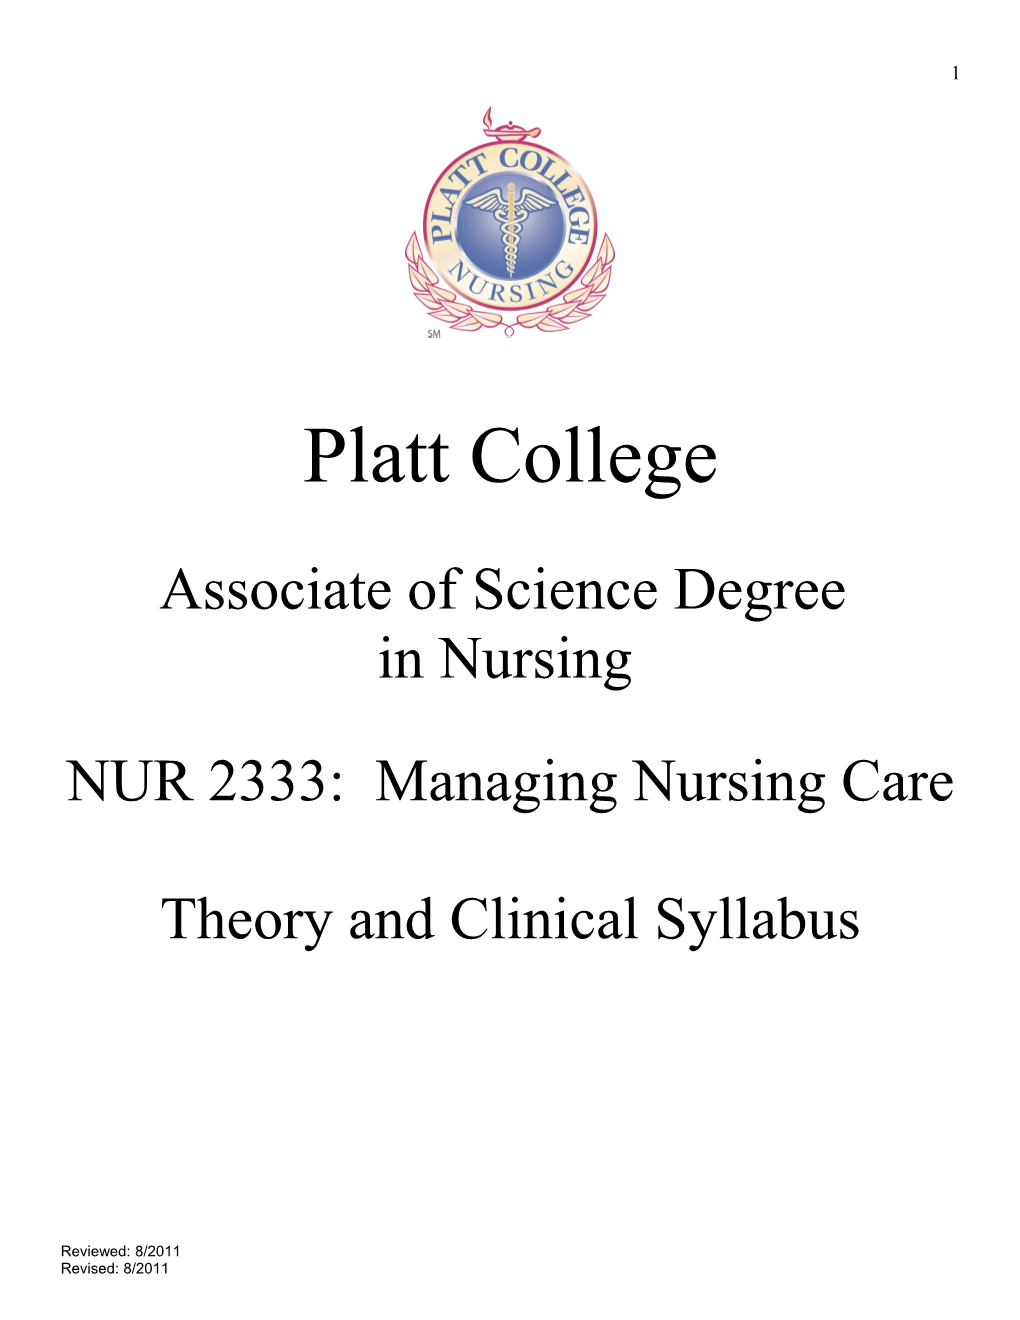 NUR 2333: Managing Nursing Care